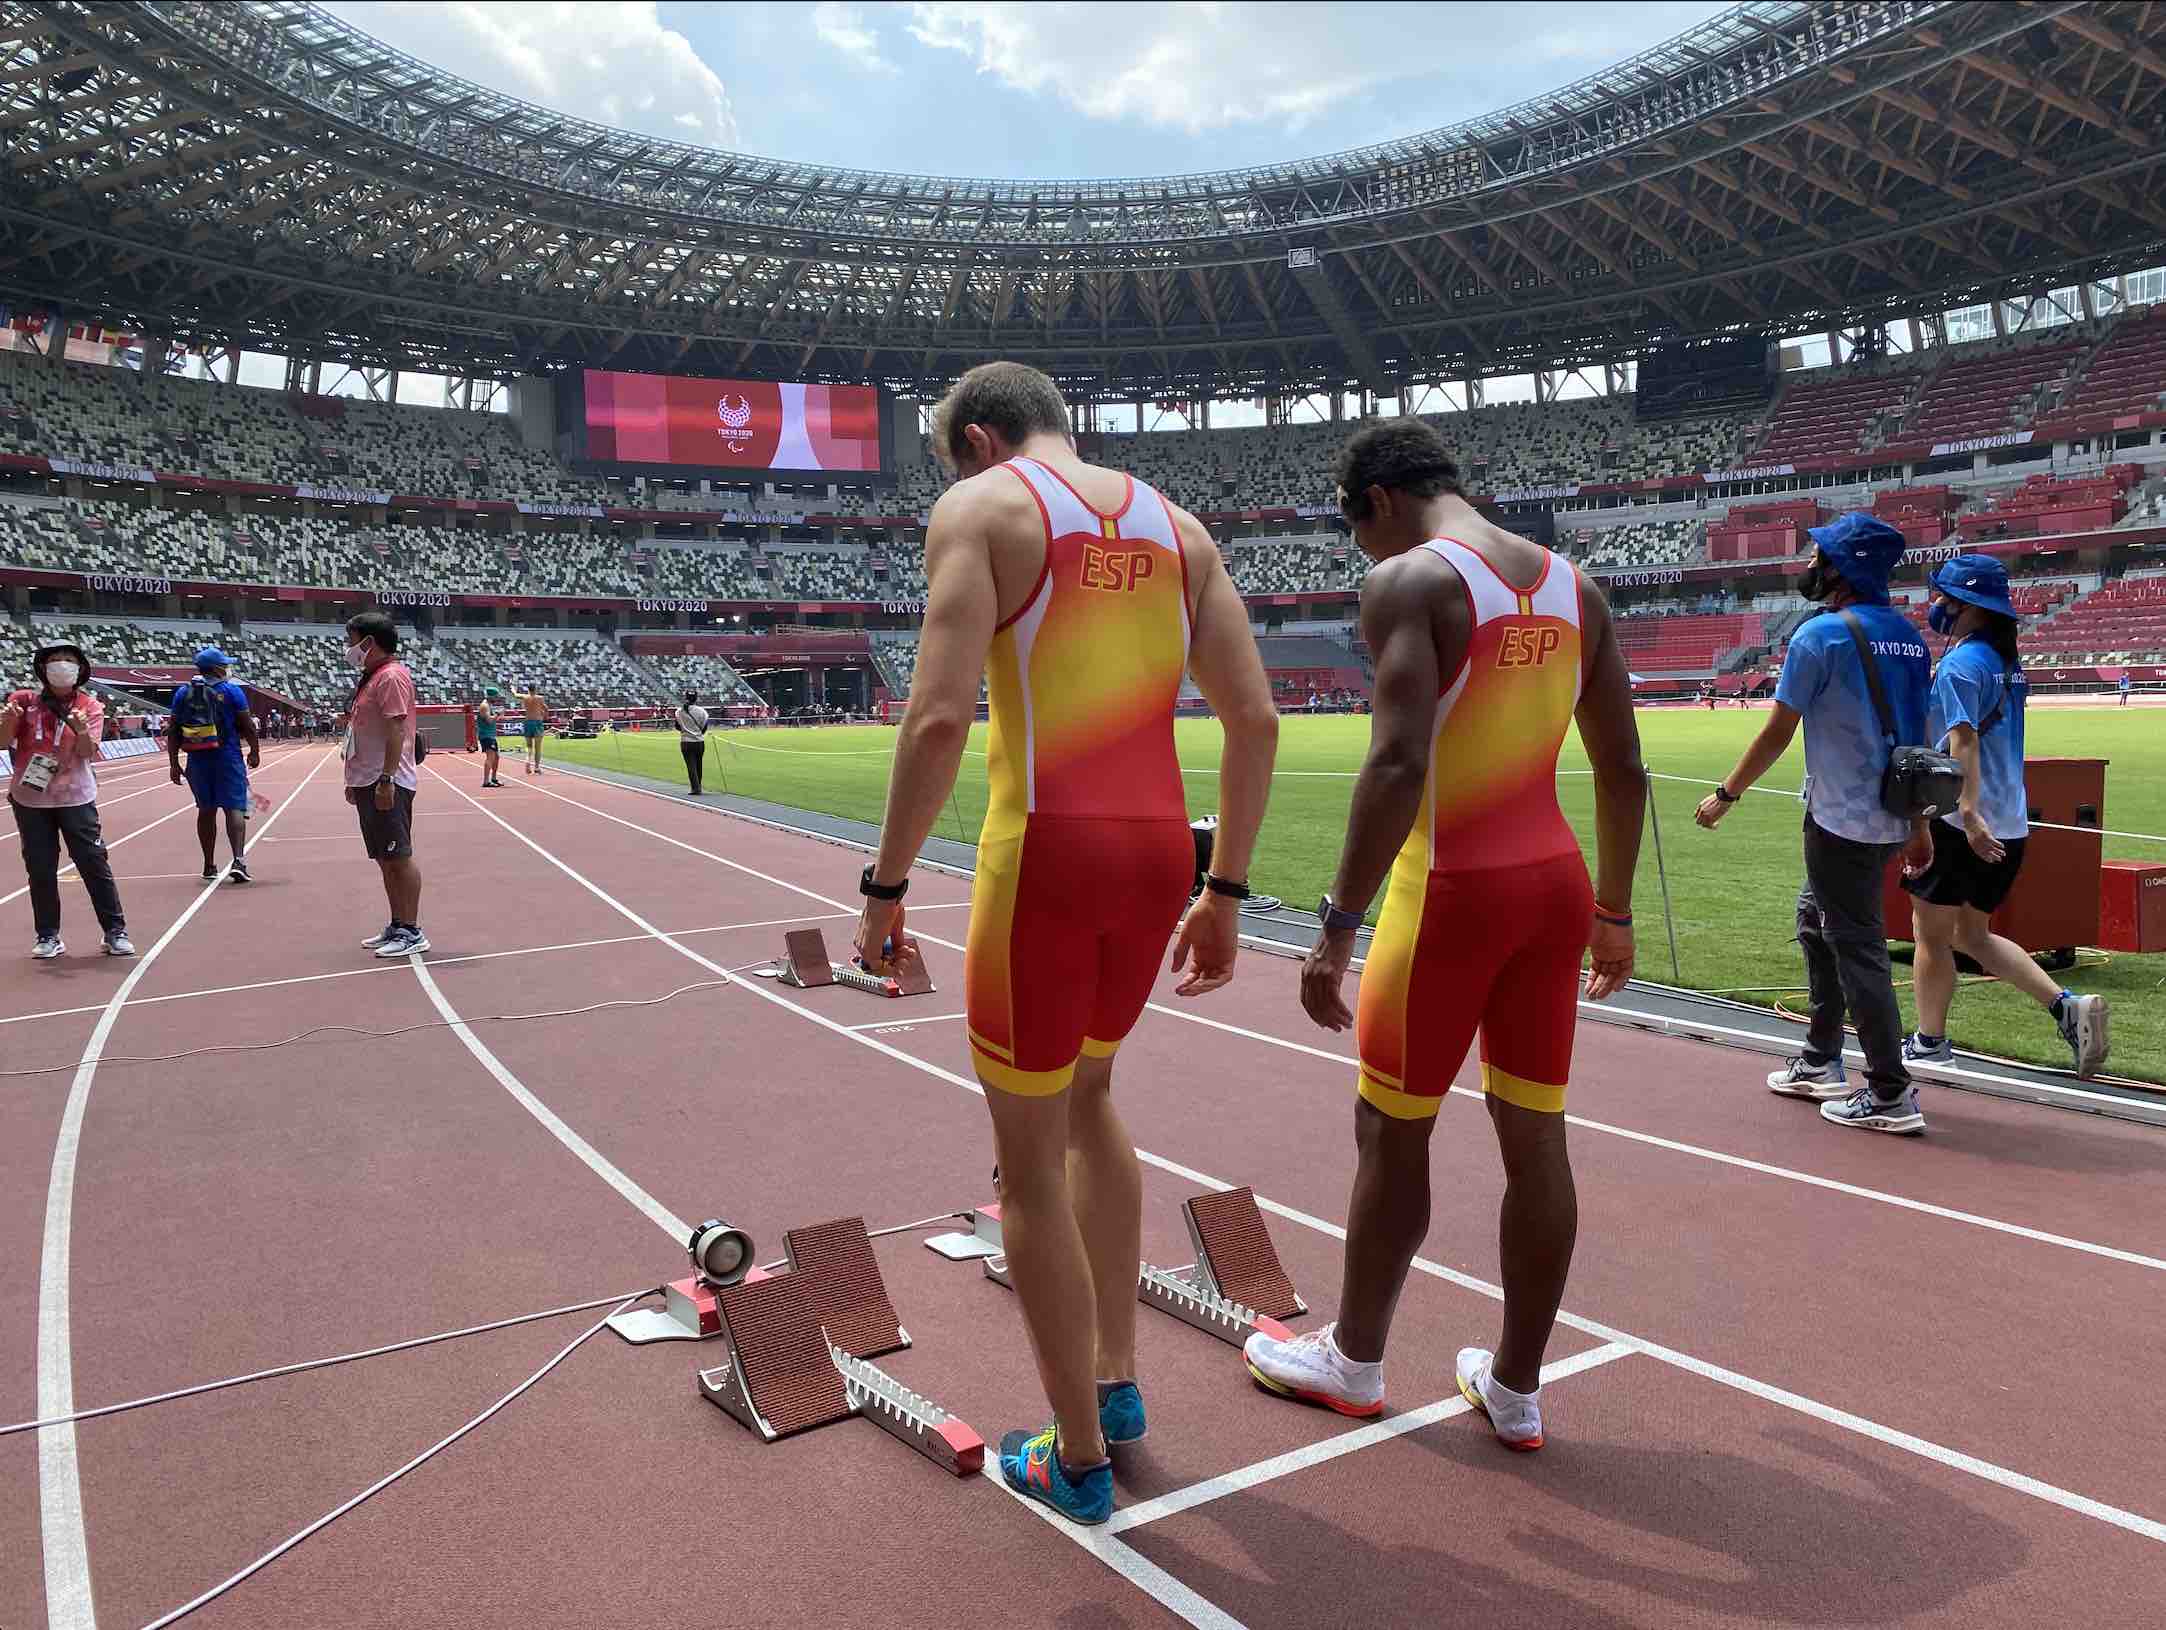 Eduardo Uceda Novas y Jorge Gutiérrez Hellín en el Estadio Olímpico de Tokio 2020